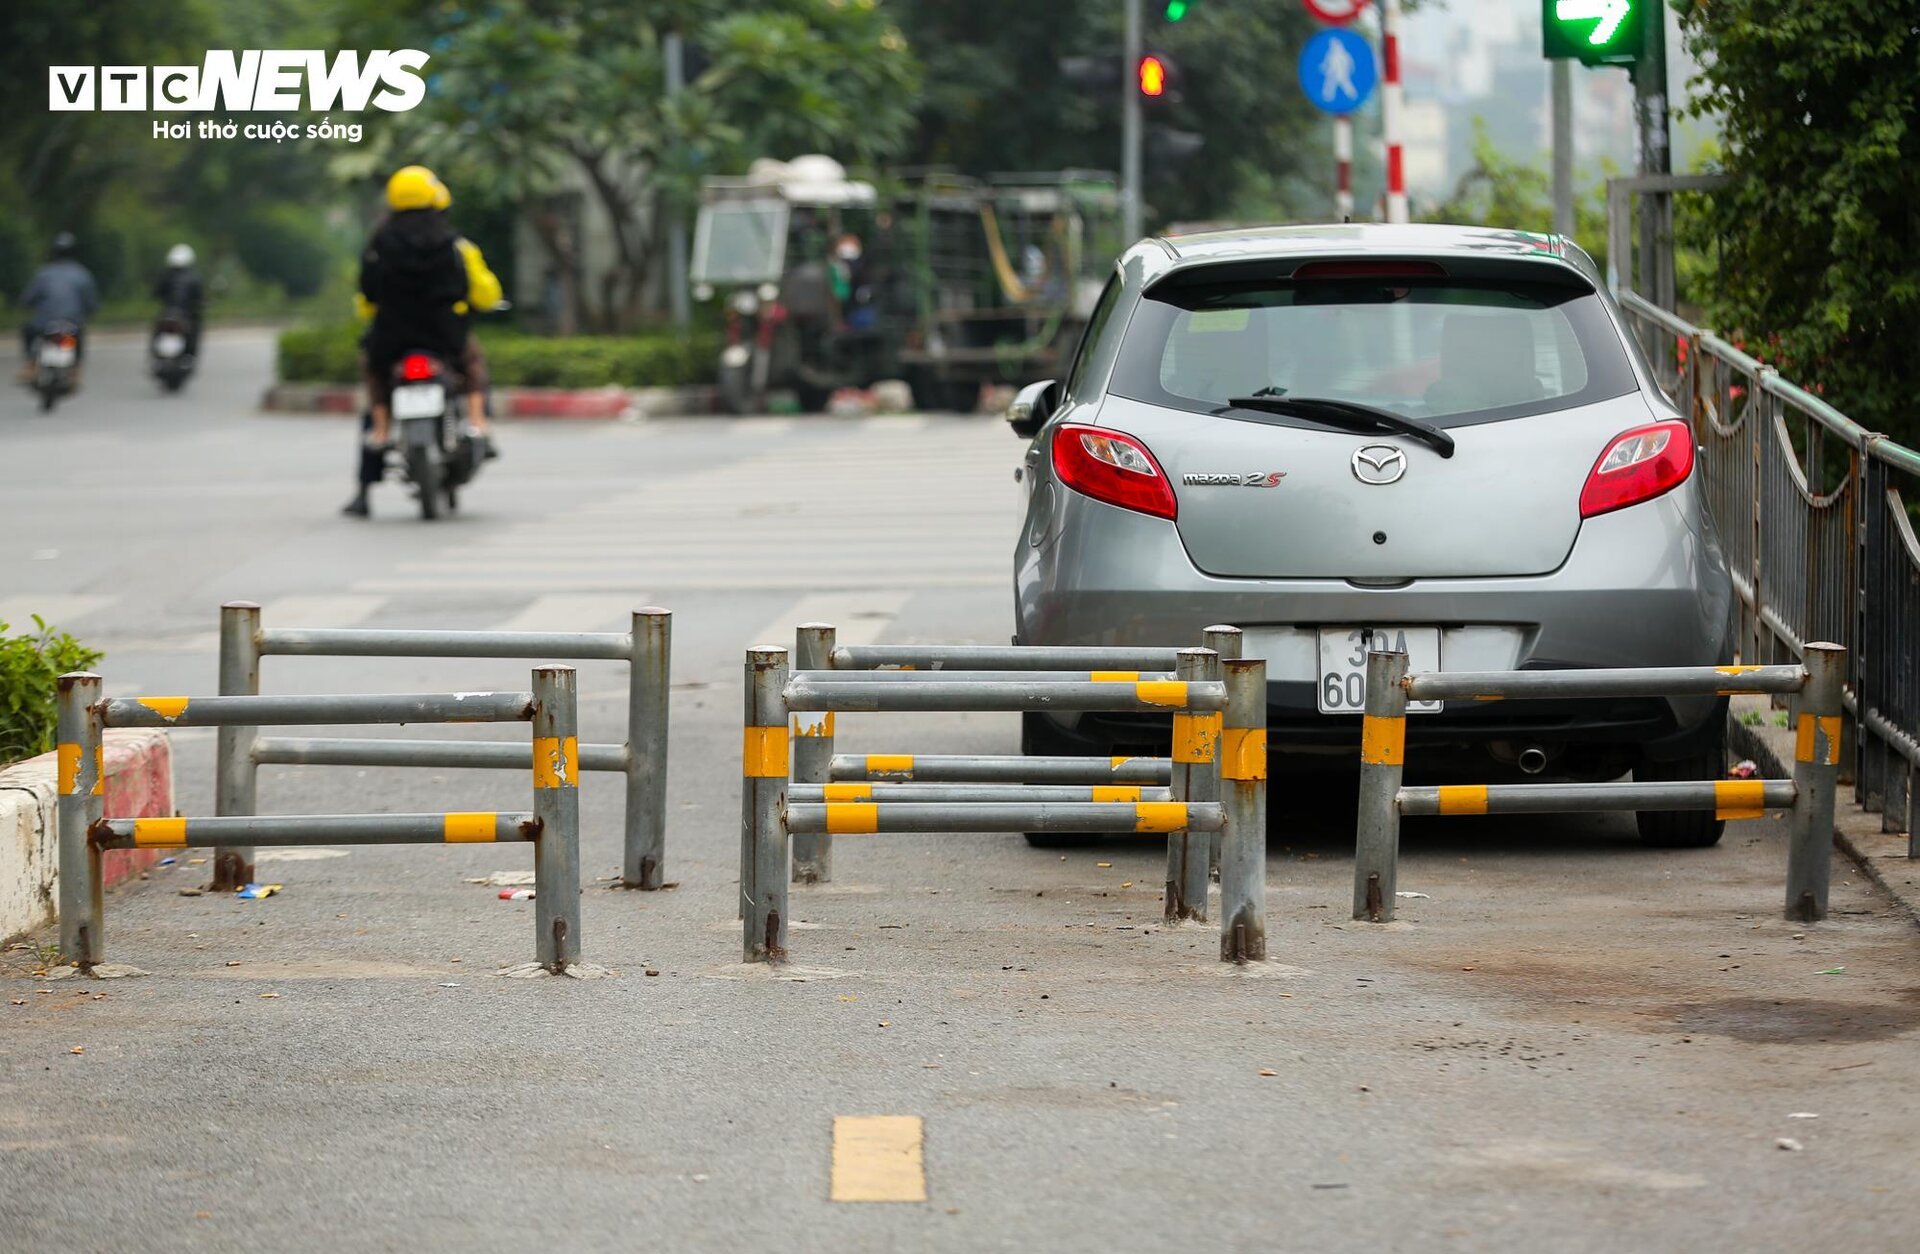 Cận cảnh 2 tuyến đường ở Hà Nội đề xuất thiết kế làn đường dành riêng cho xe đạp - Ảnh 12